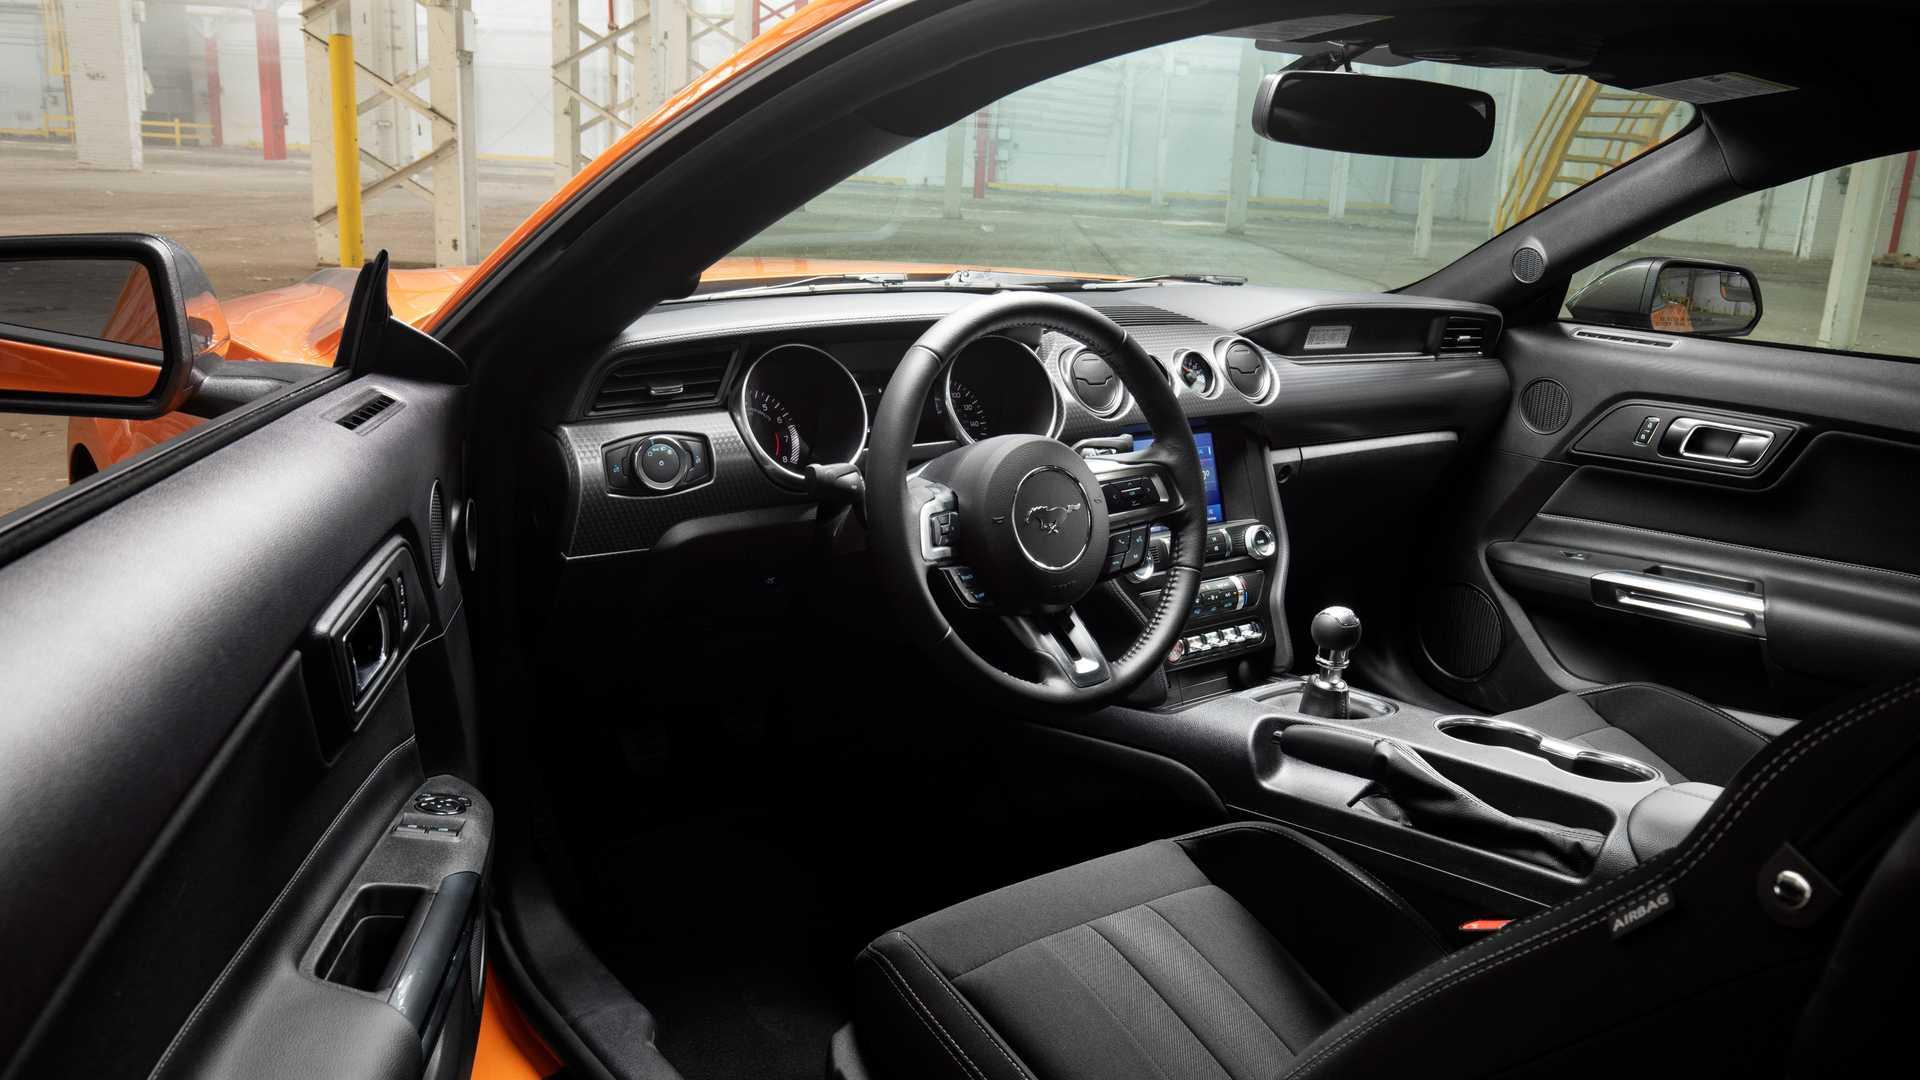 เจาะสเปก Ford Mustang 2.3L High Performance 2020 รุ่นพิเศษที่ดุดันกว่าเดิม